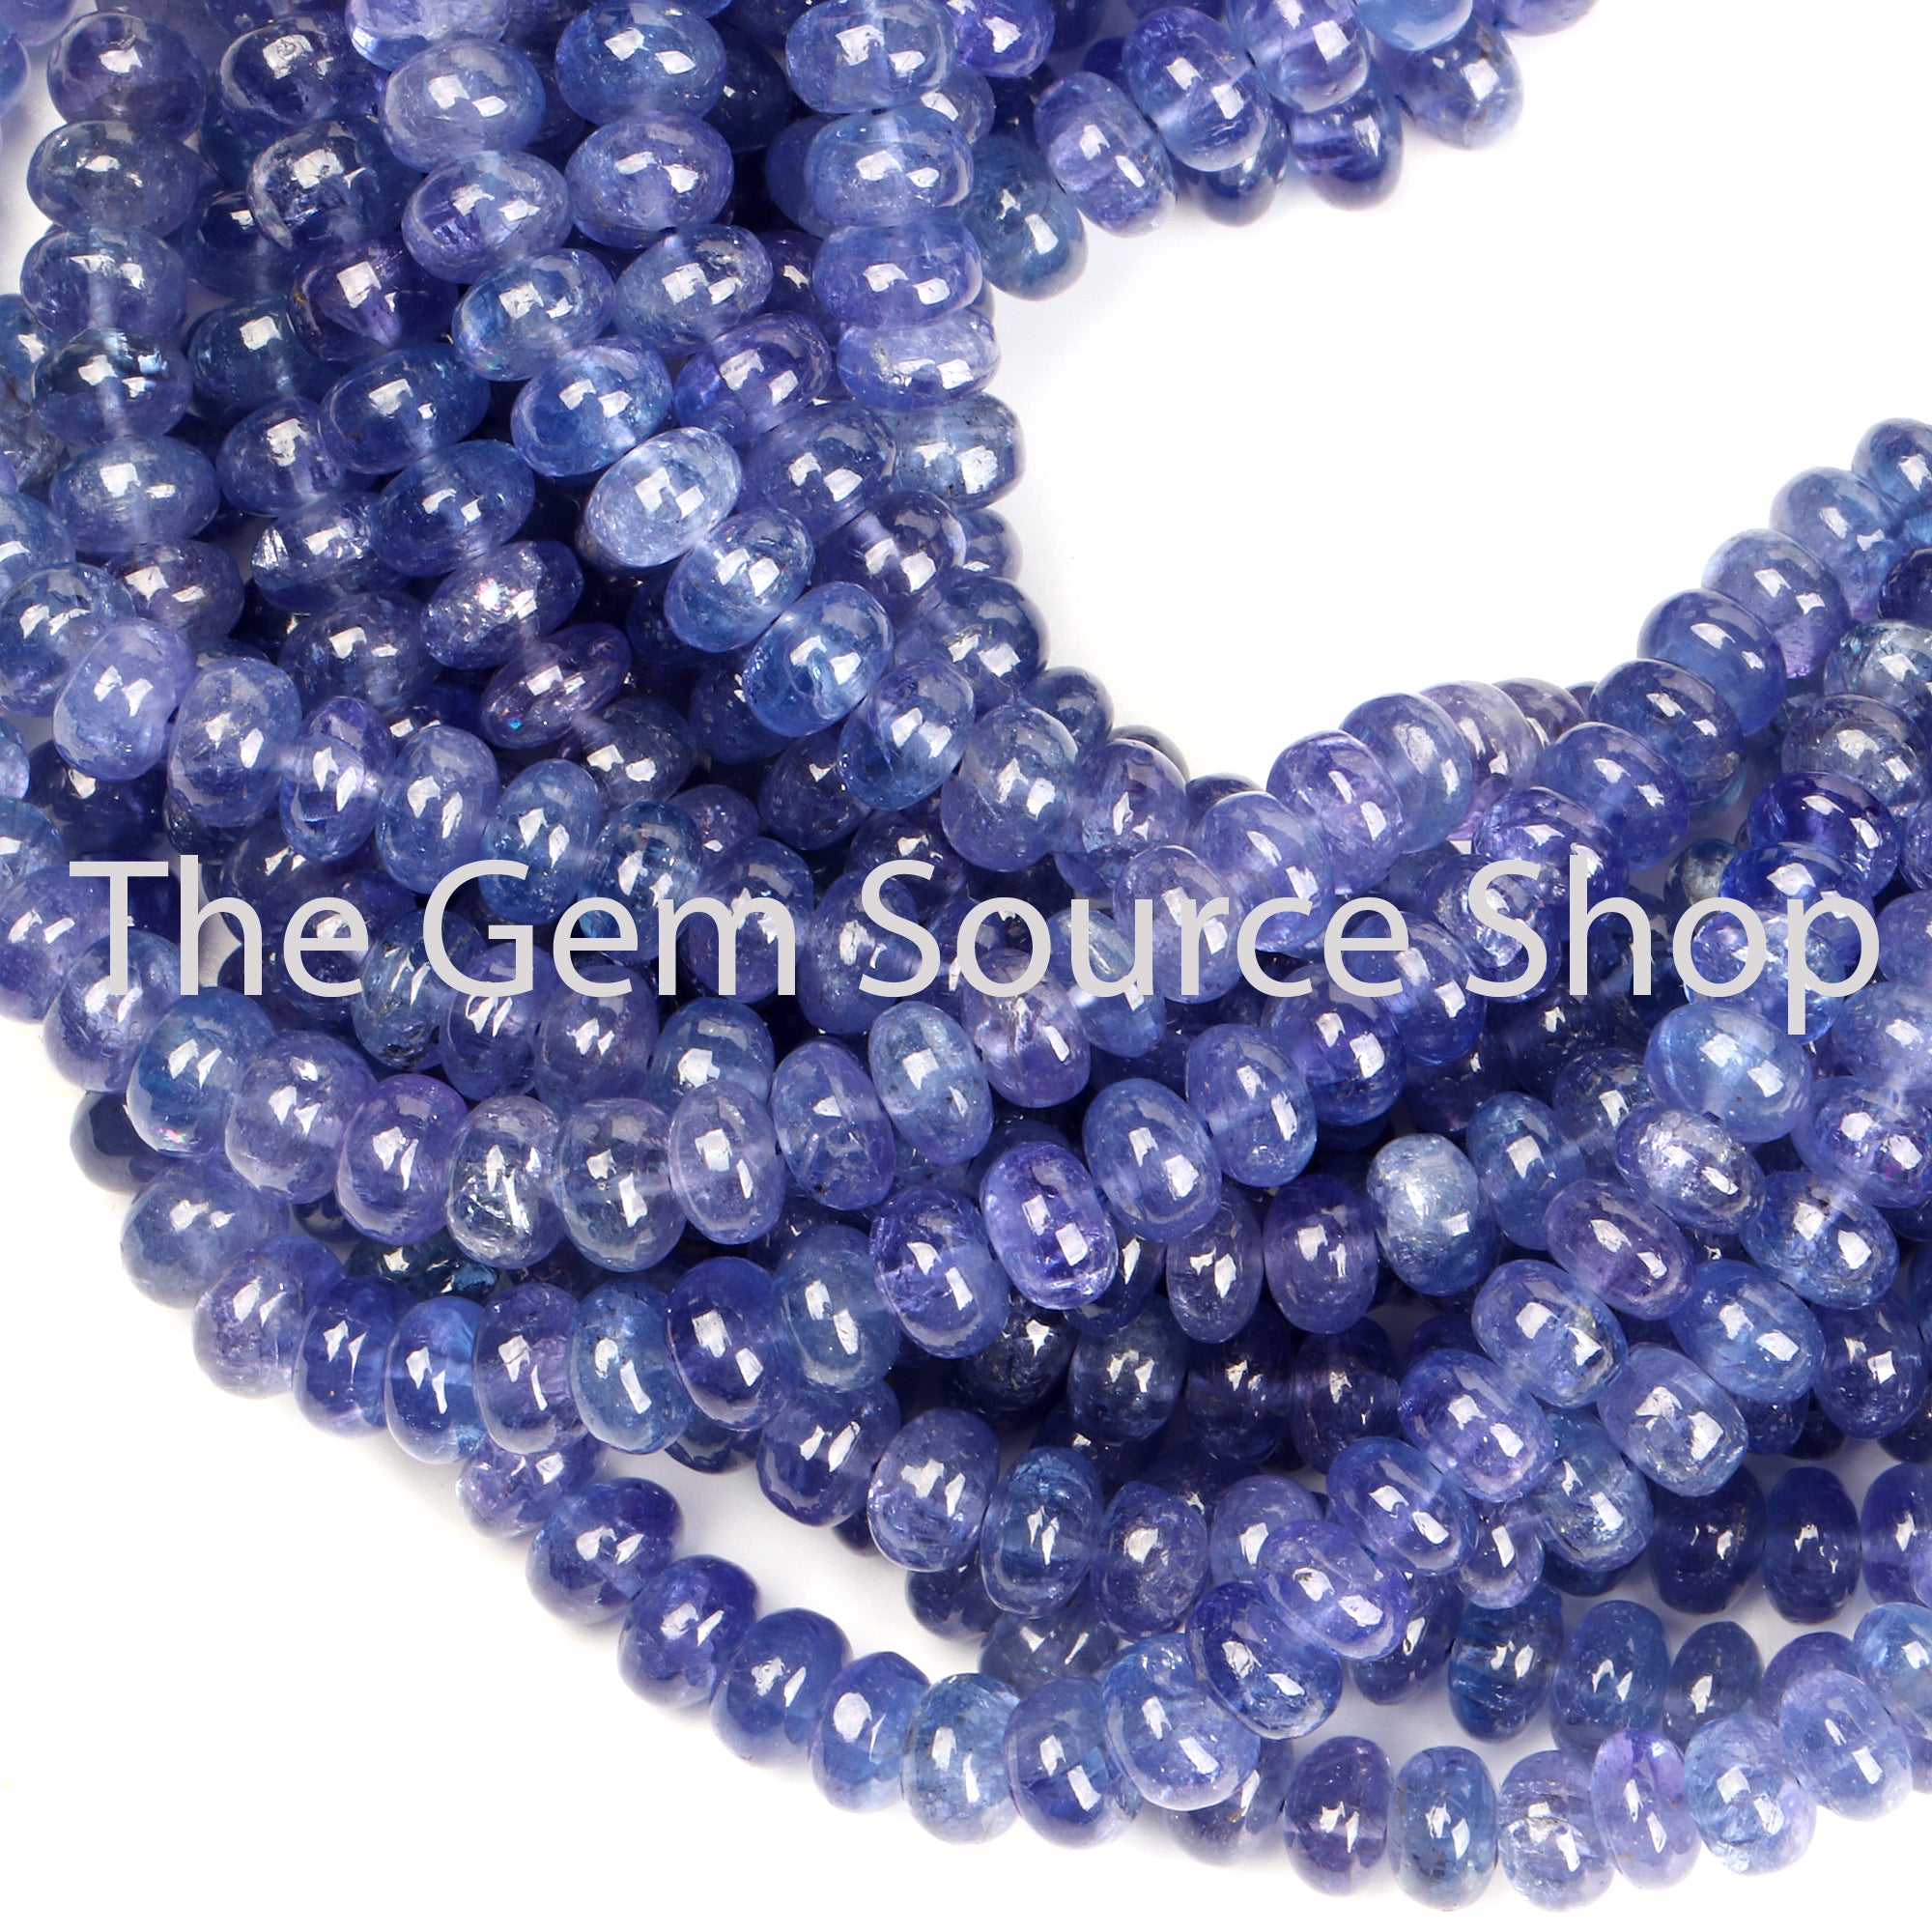 Tanzanite Beads, Tanzanite Rondelle Beads, Tanzanite Smooth Beads, Tanzanite Gemstone Beads